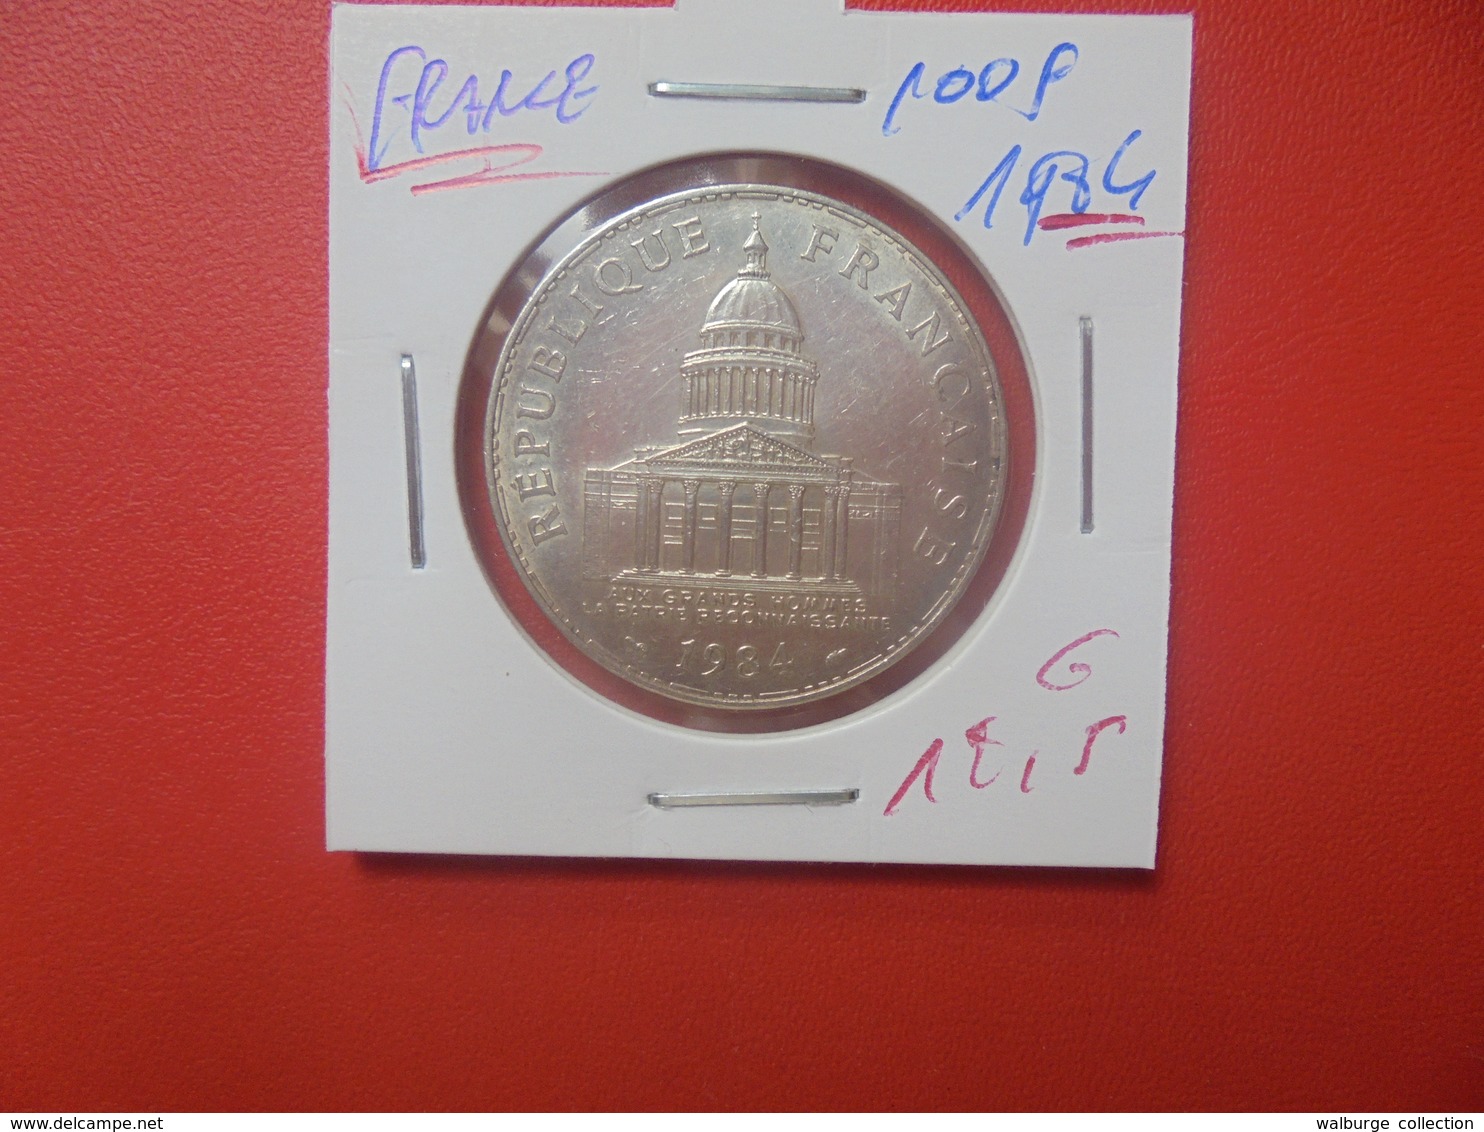 FRANCE 100 FRANCS 1984 ARGENT (A.3) - N. 100 Francs